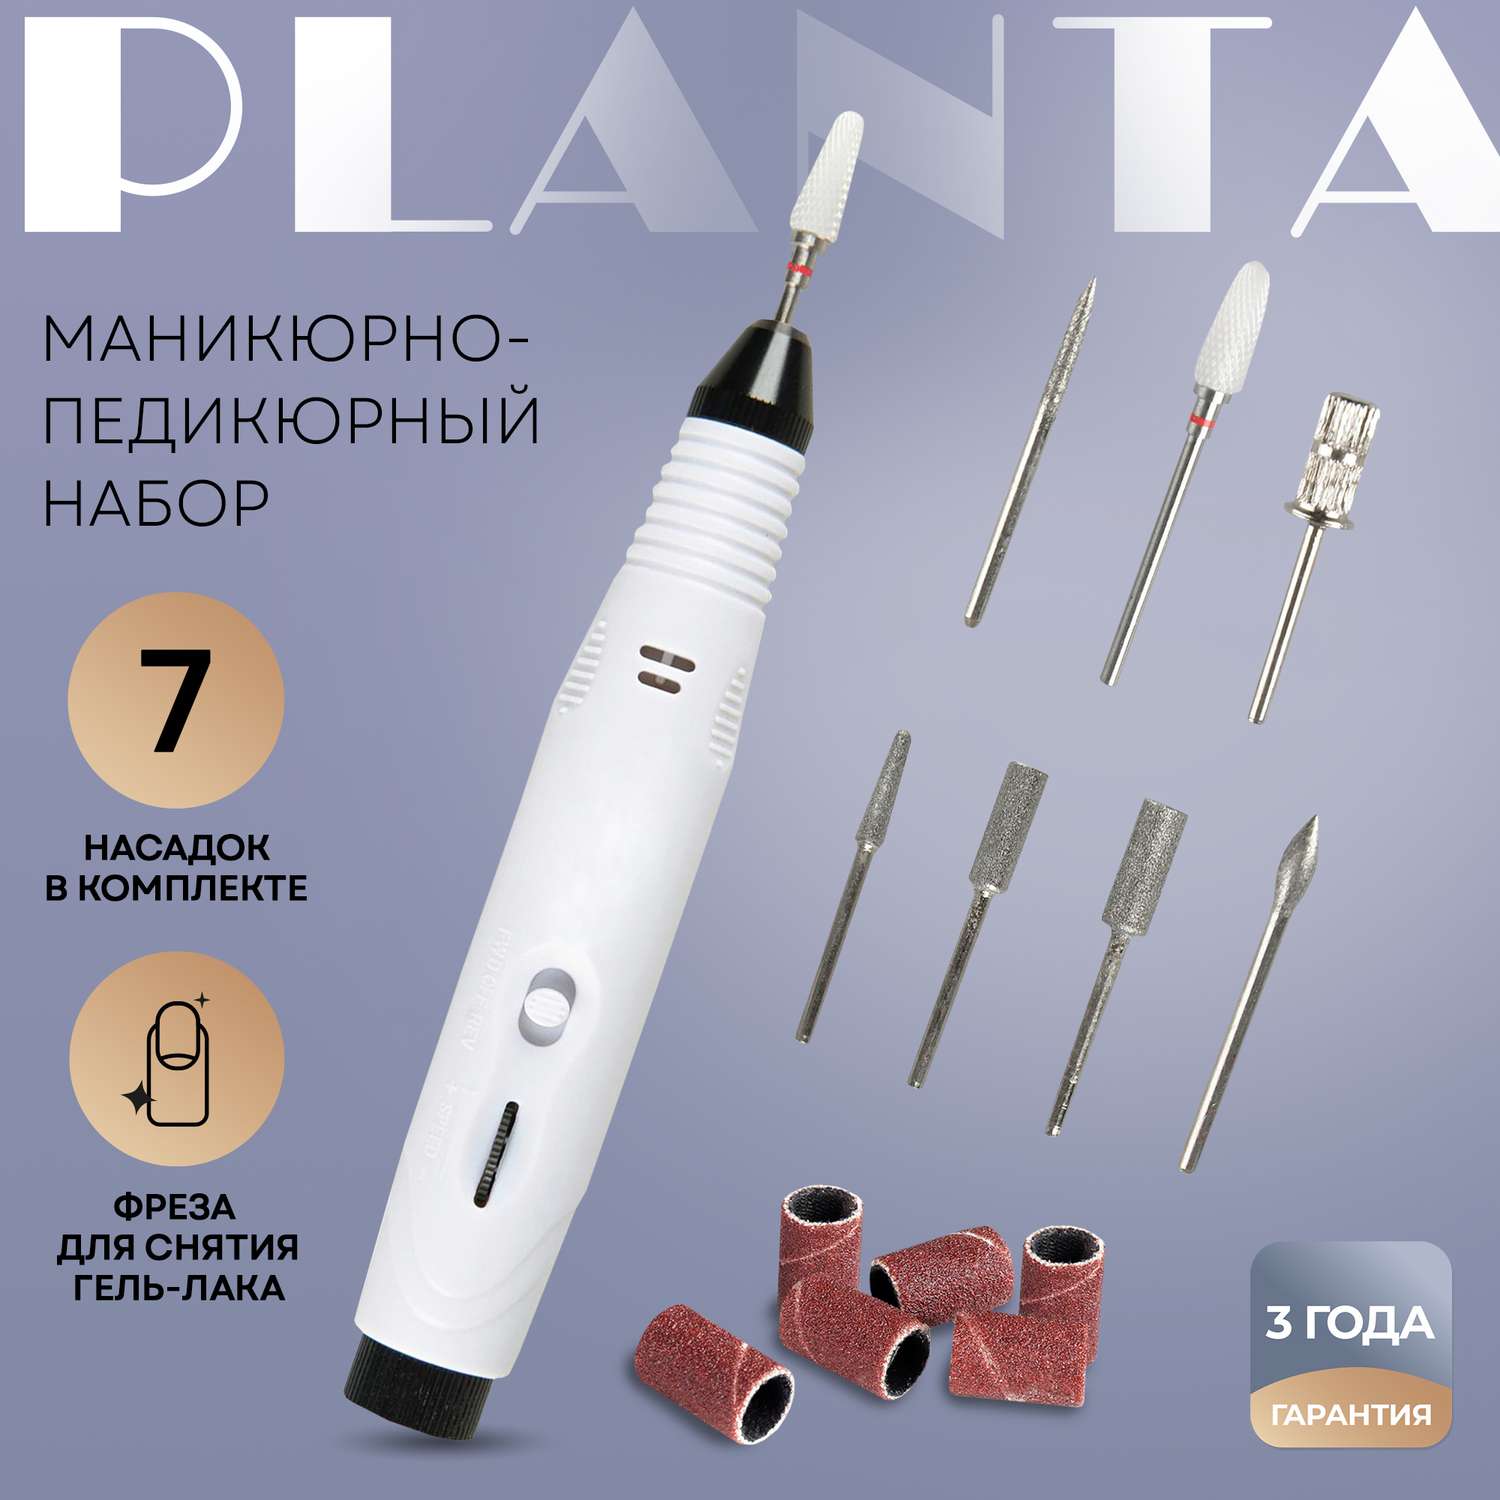 Маникюрно-педикюрный набор Planta Pl-MAN15 Master Nail Care - фото 1